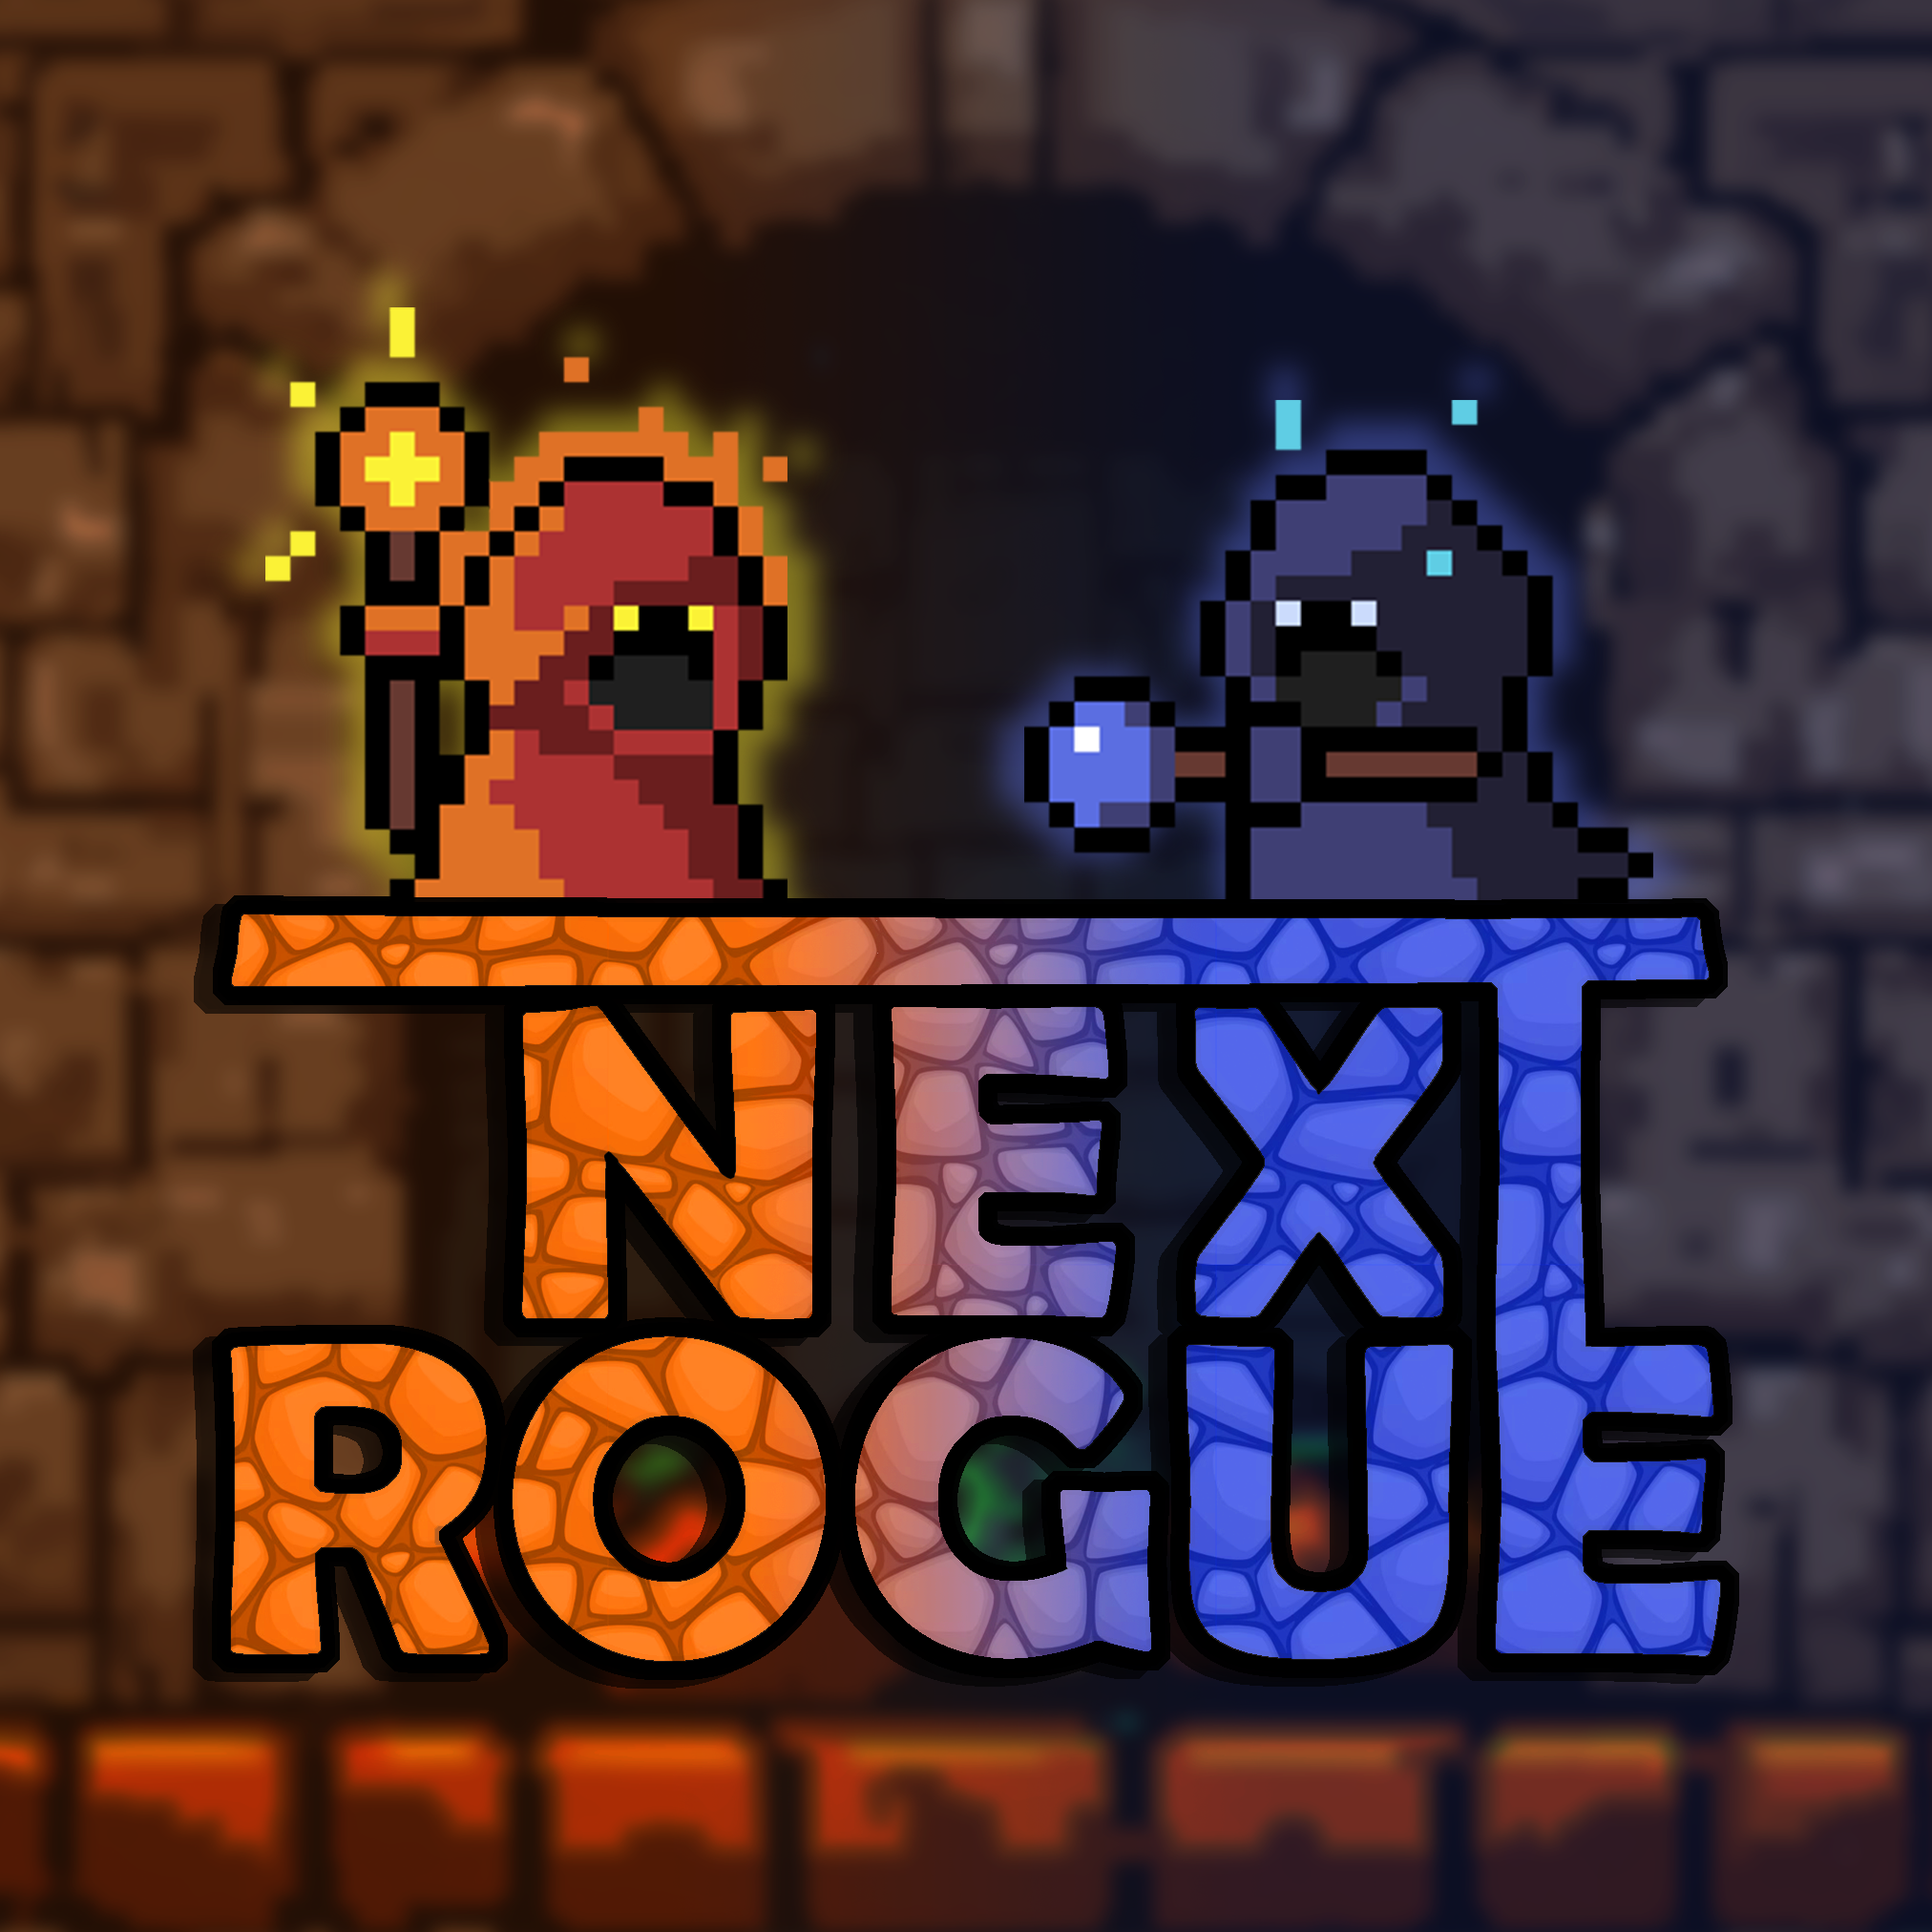 Next Rogue